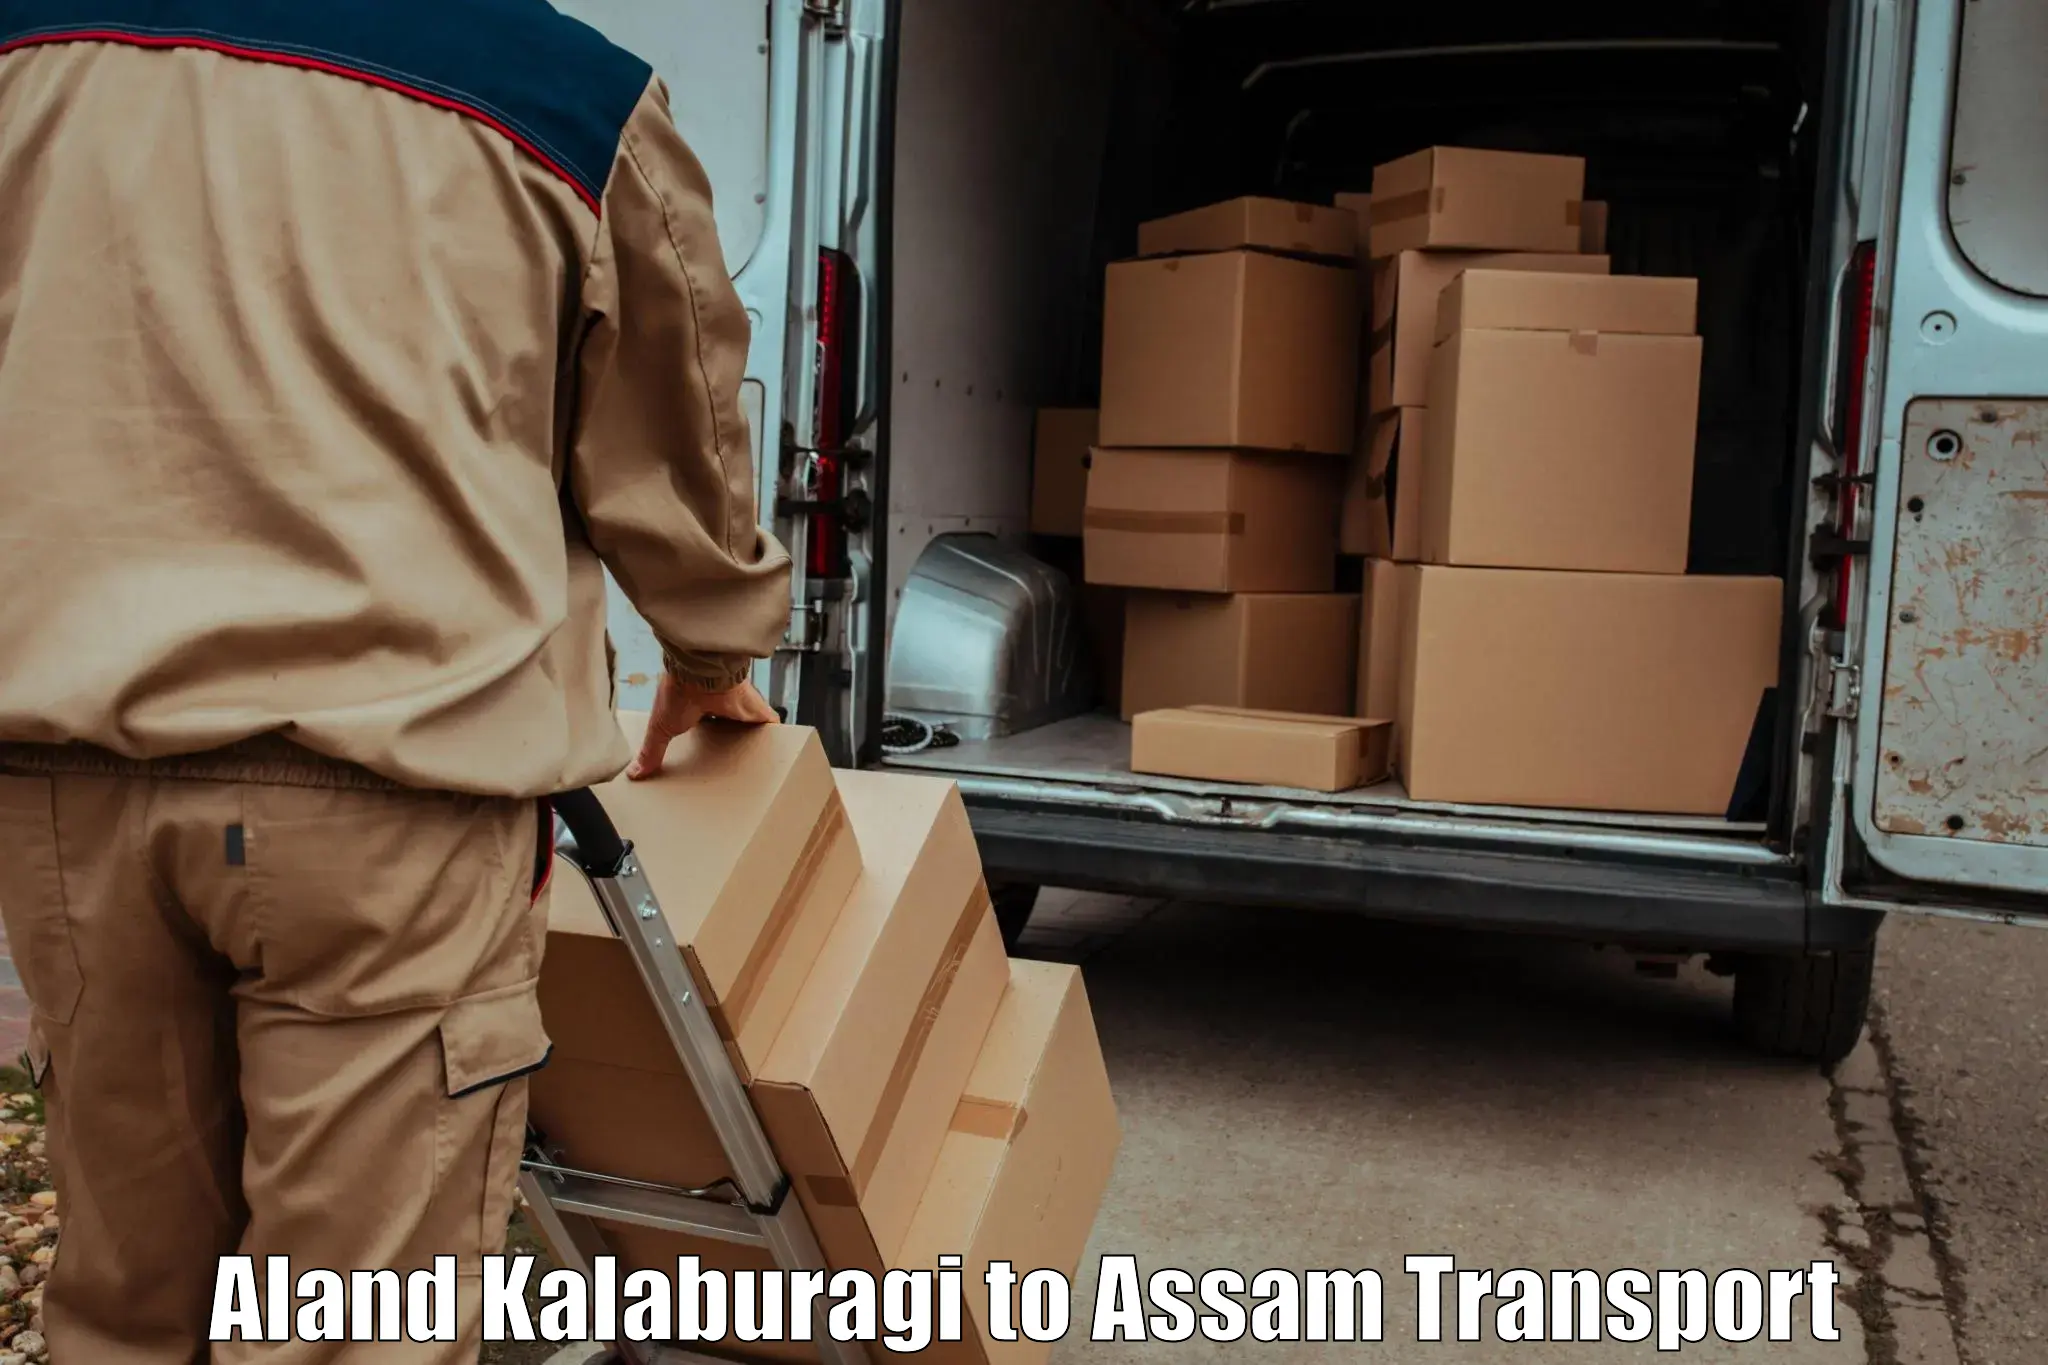 Online transport service Aland Kalaburagi to Karbi Anglong